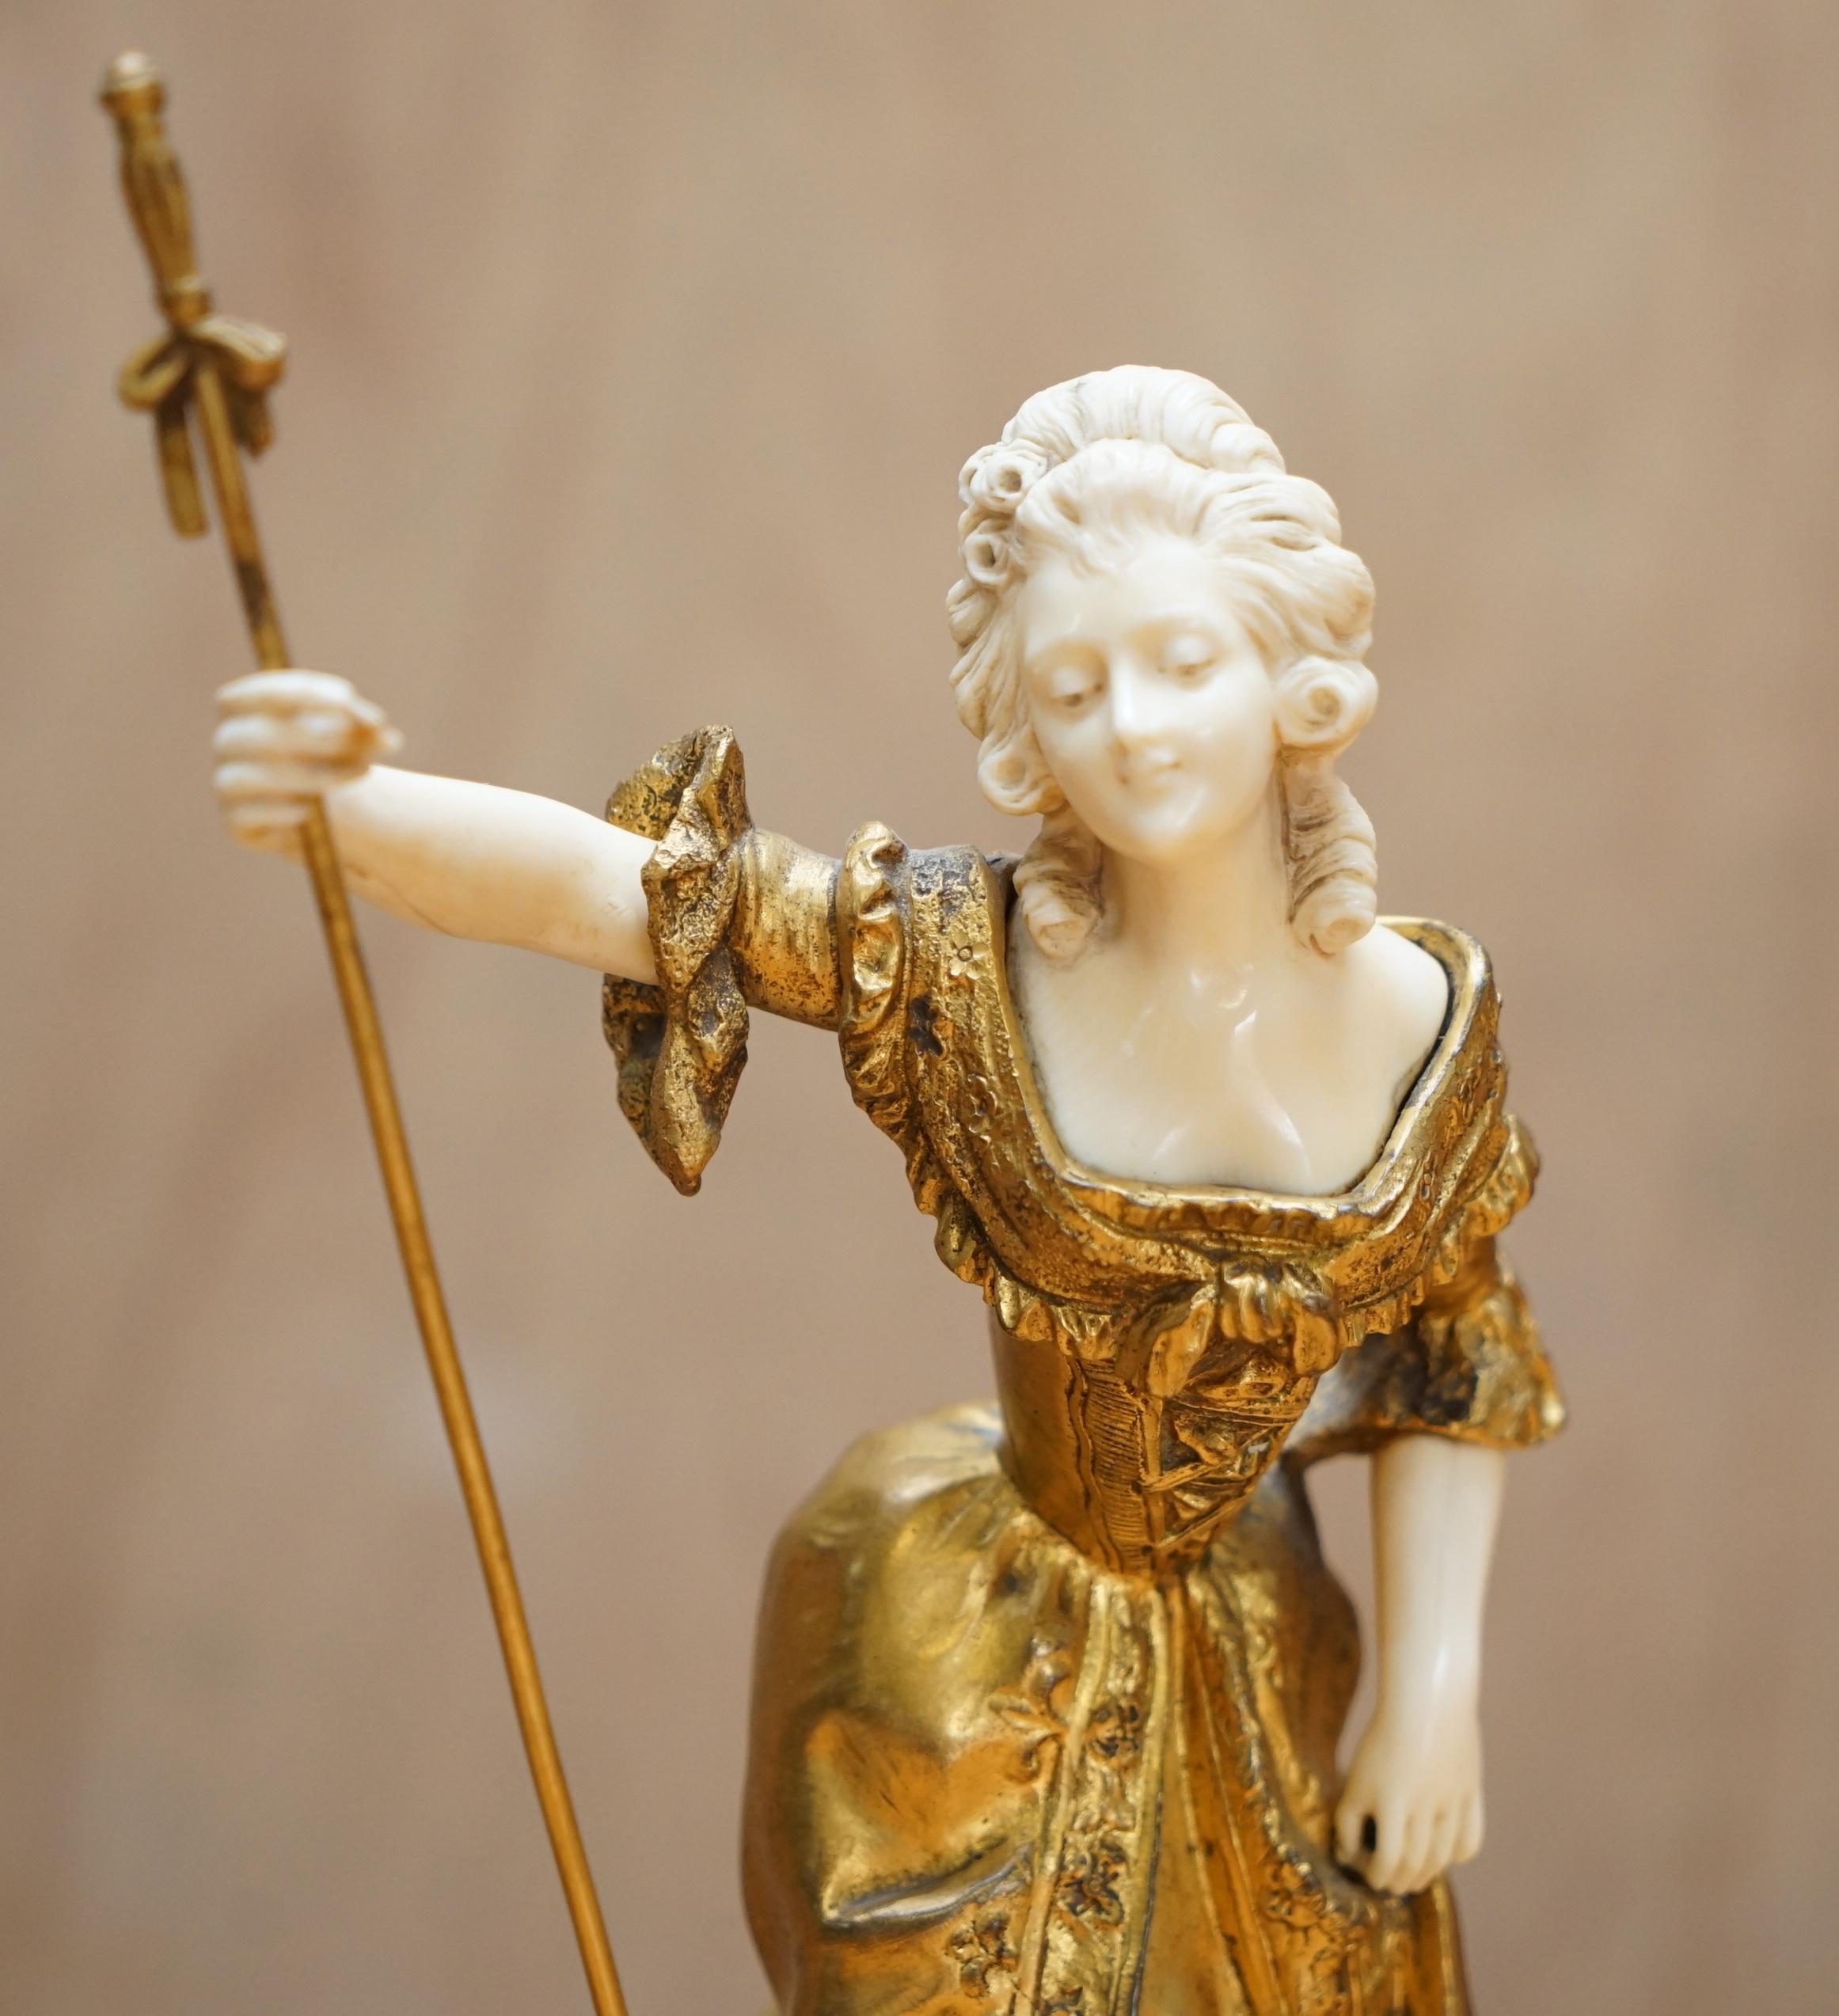 Royal House Antiques

Royal House Antiques freut sich, diese absolut atemberaubende, originale, signierte und gestempelte Dominique Alonzo Statue aus vergoldeter Bronze aus dem 19. Jahrhundert zum Verkauf anzubieten.

Ein wahrhaft atemberaubendes